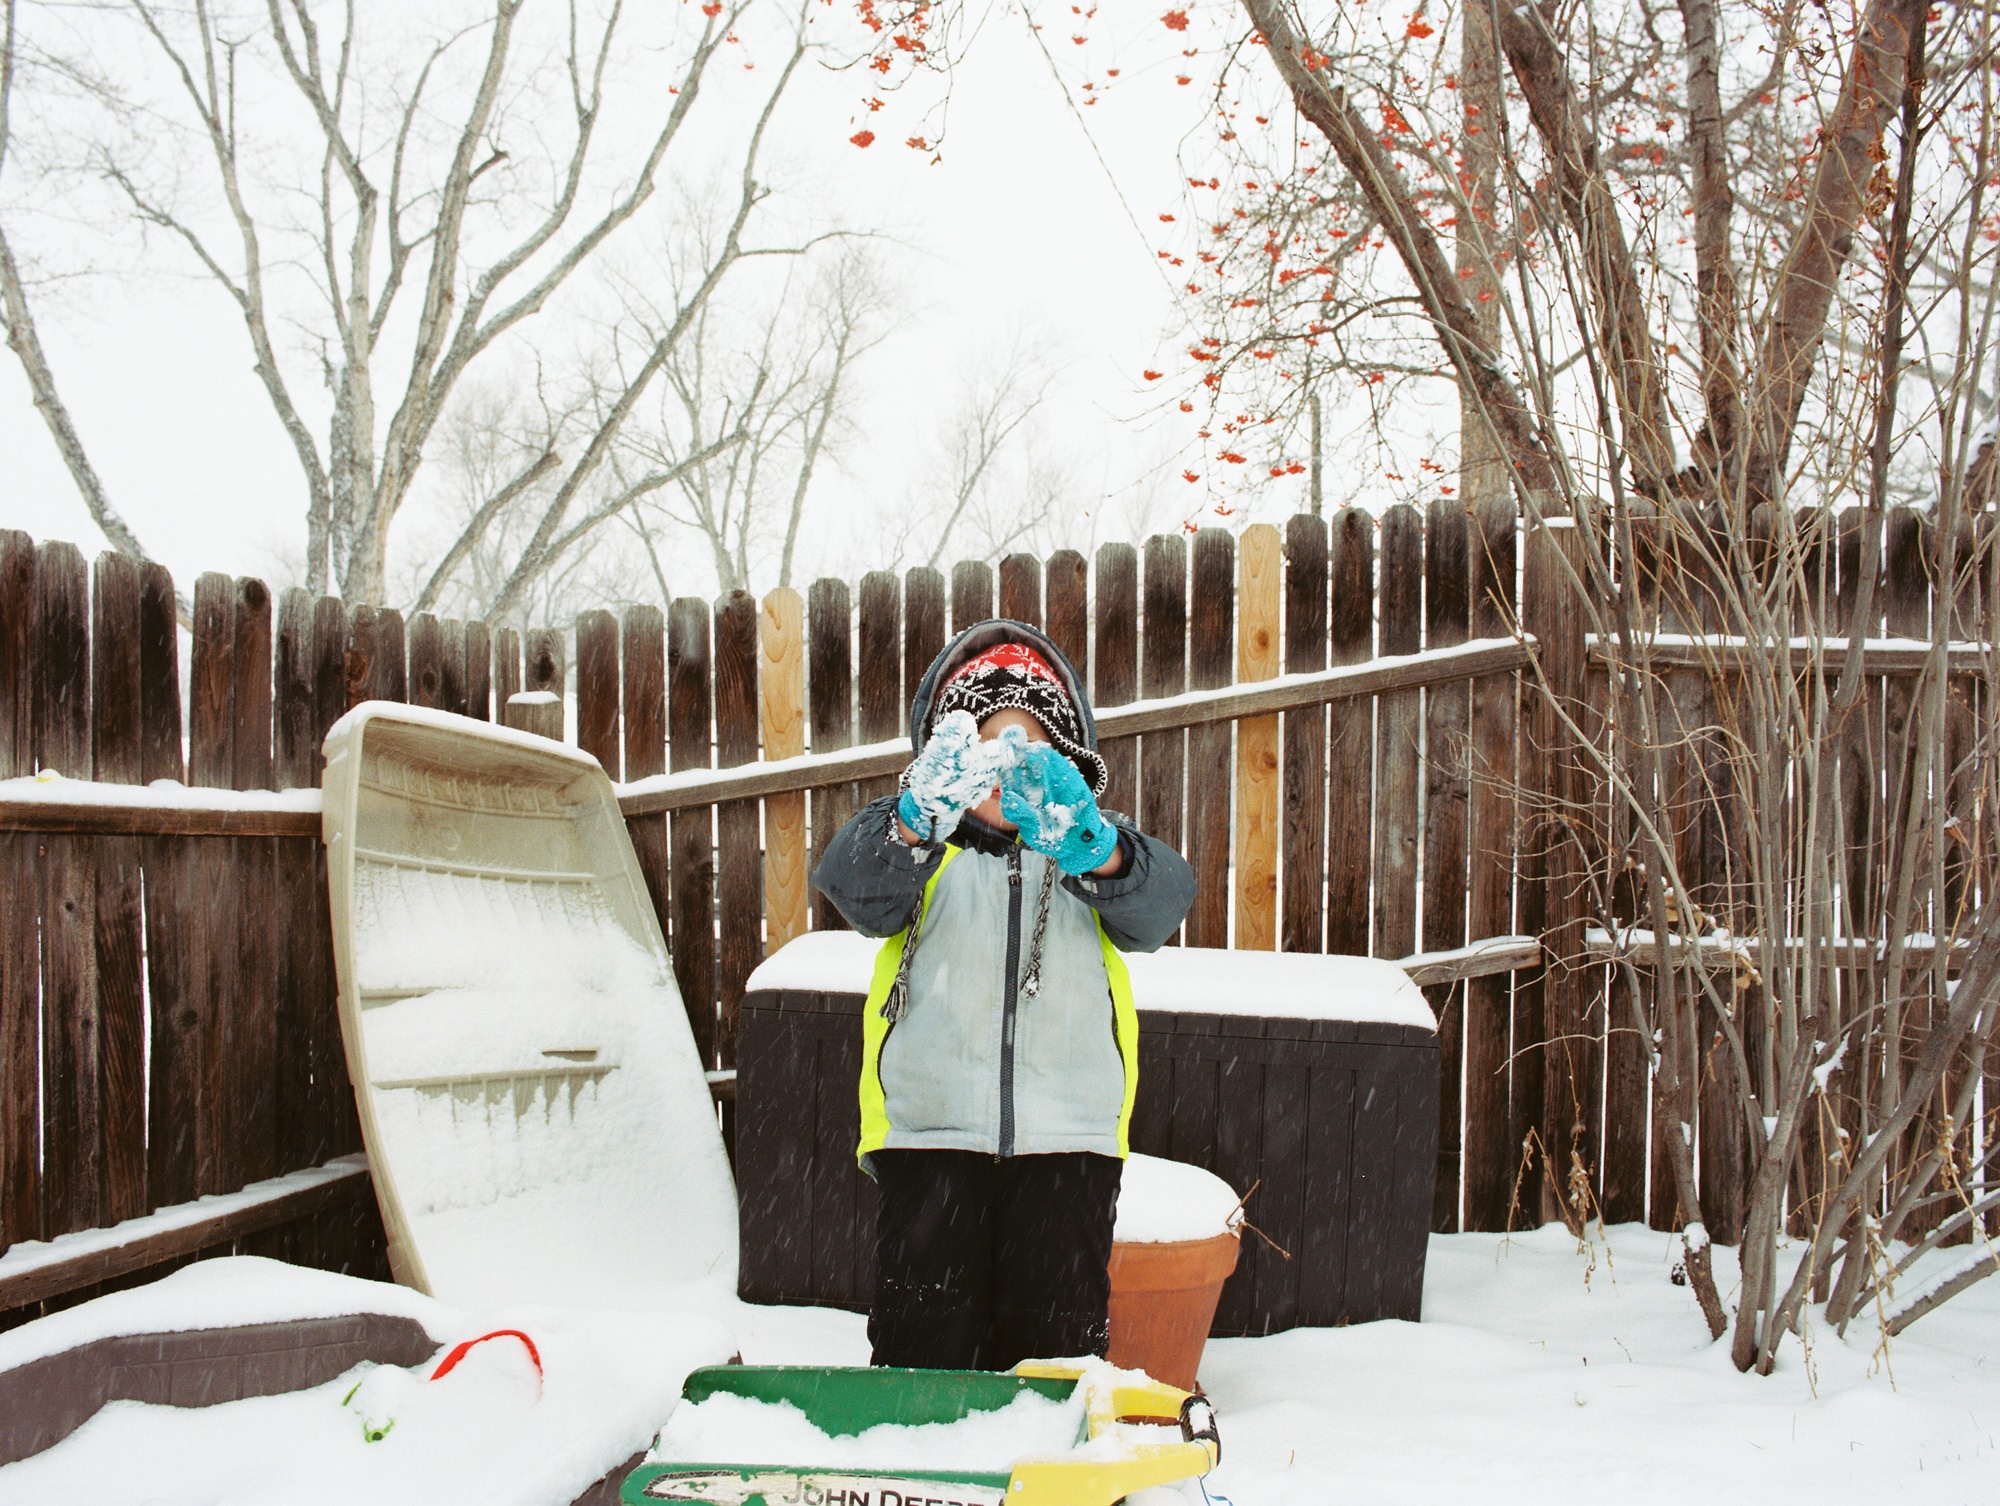 colorado boy playing in a snowy backyard